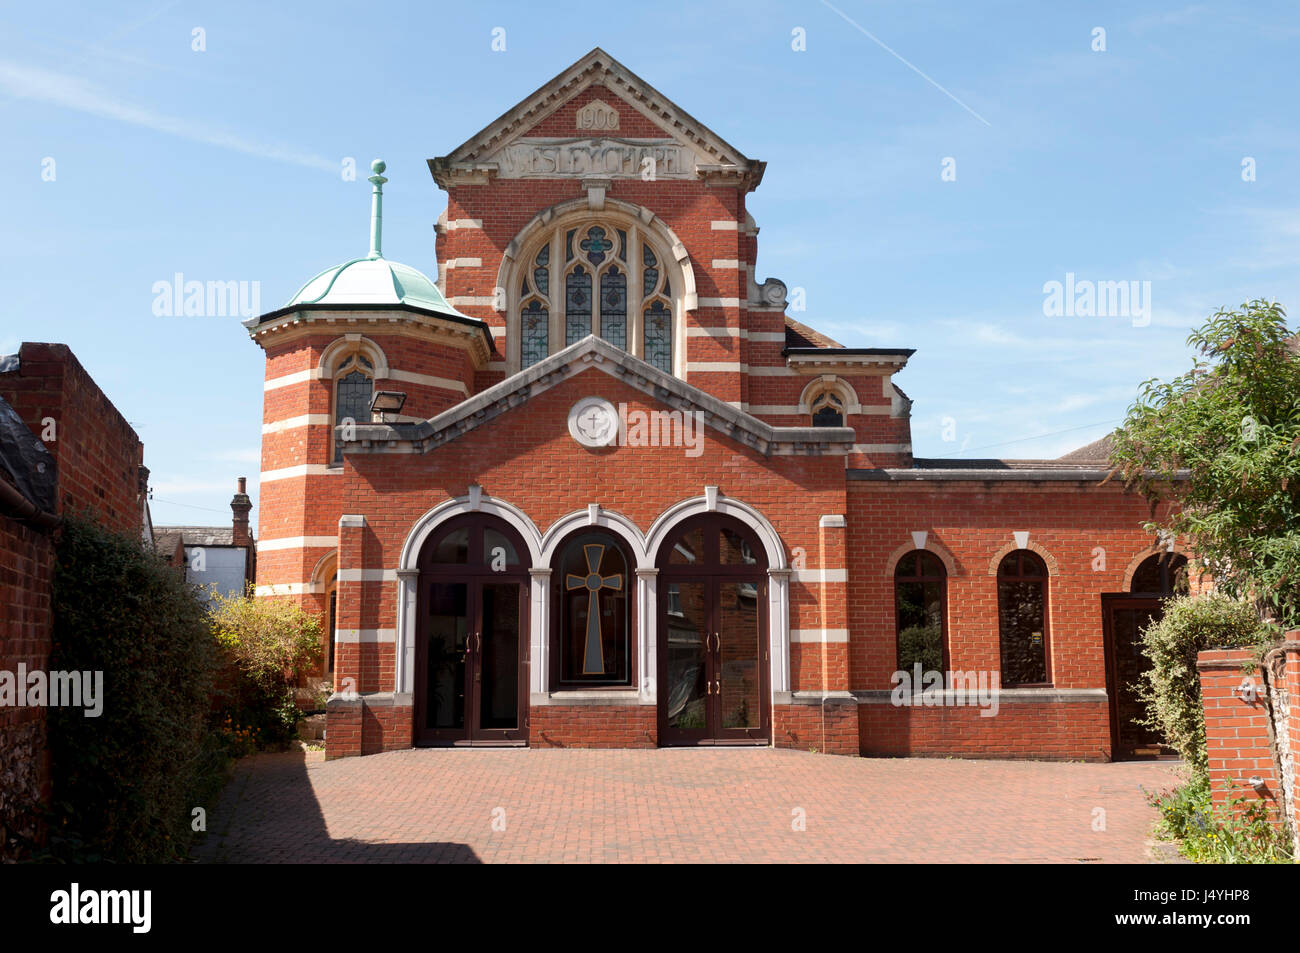 L'église méthodiste, Marlow, Buckinghamshire, England, UK Banque D'Images